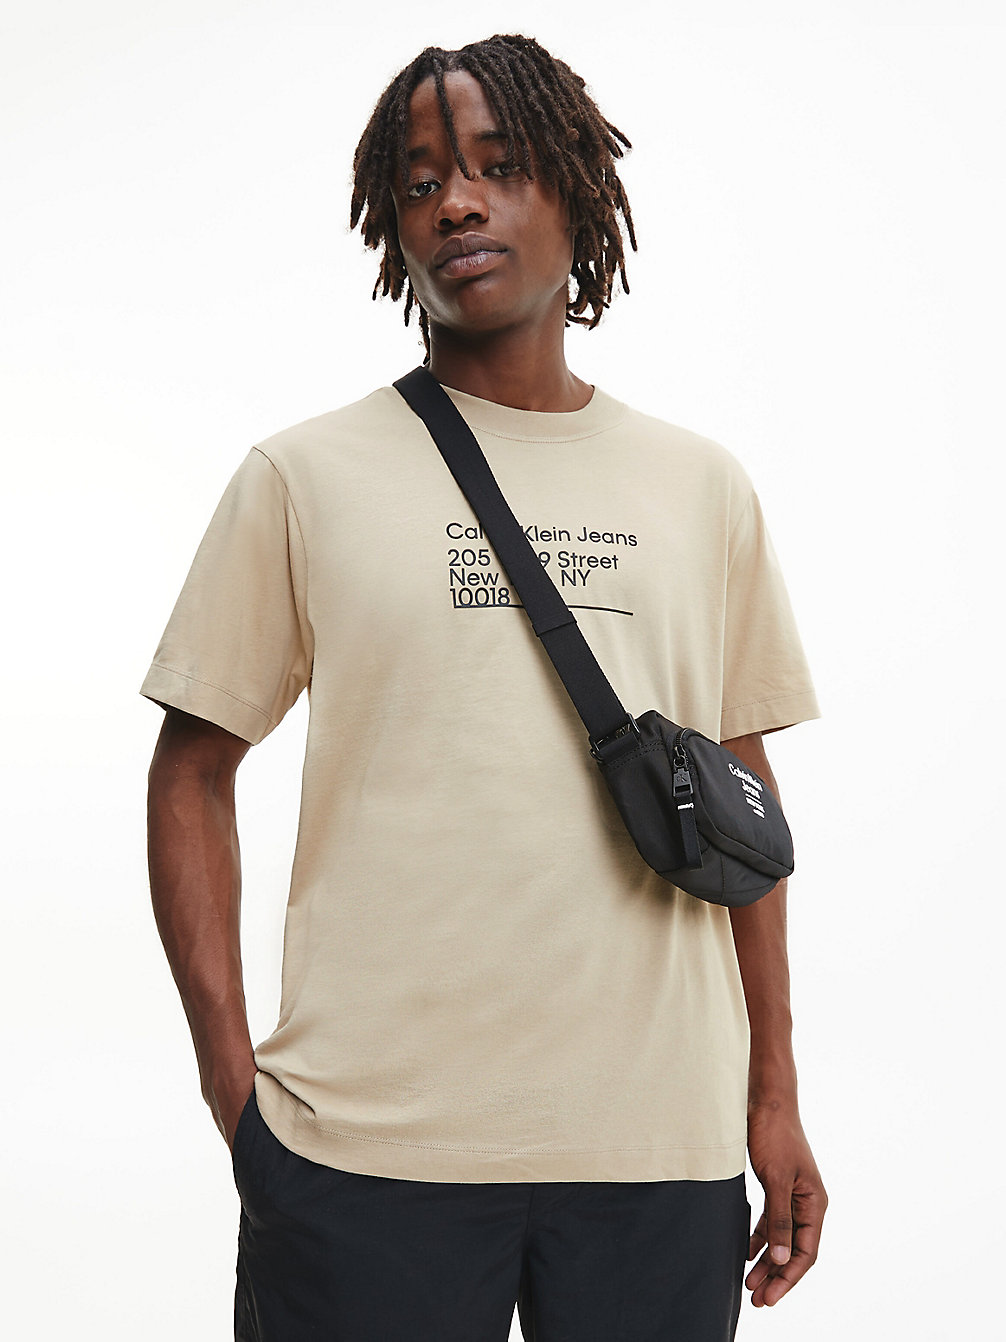 TRAVERTINE Relaxtes T-Shirt Aus Bio-Baumwolle undefined Herren Calvin Klein